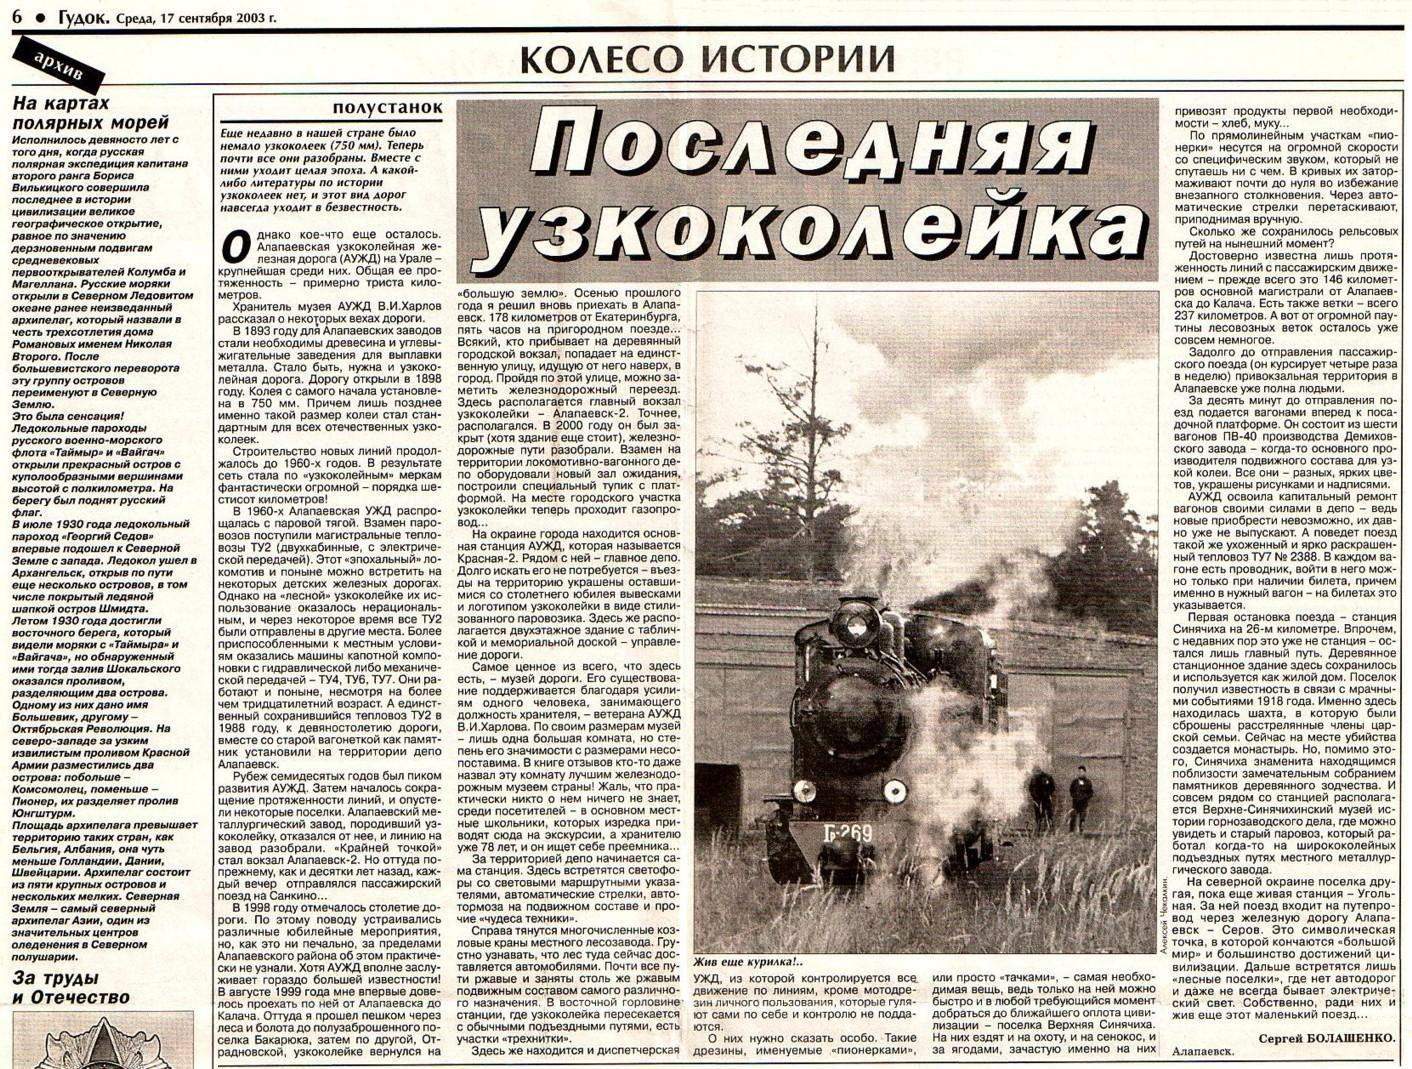 Алапаевская узкоколейная железная дорога — материал, опубликованный в общероссийской газете «Гудок» (2003 год) 